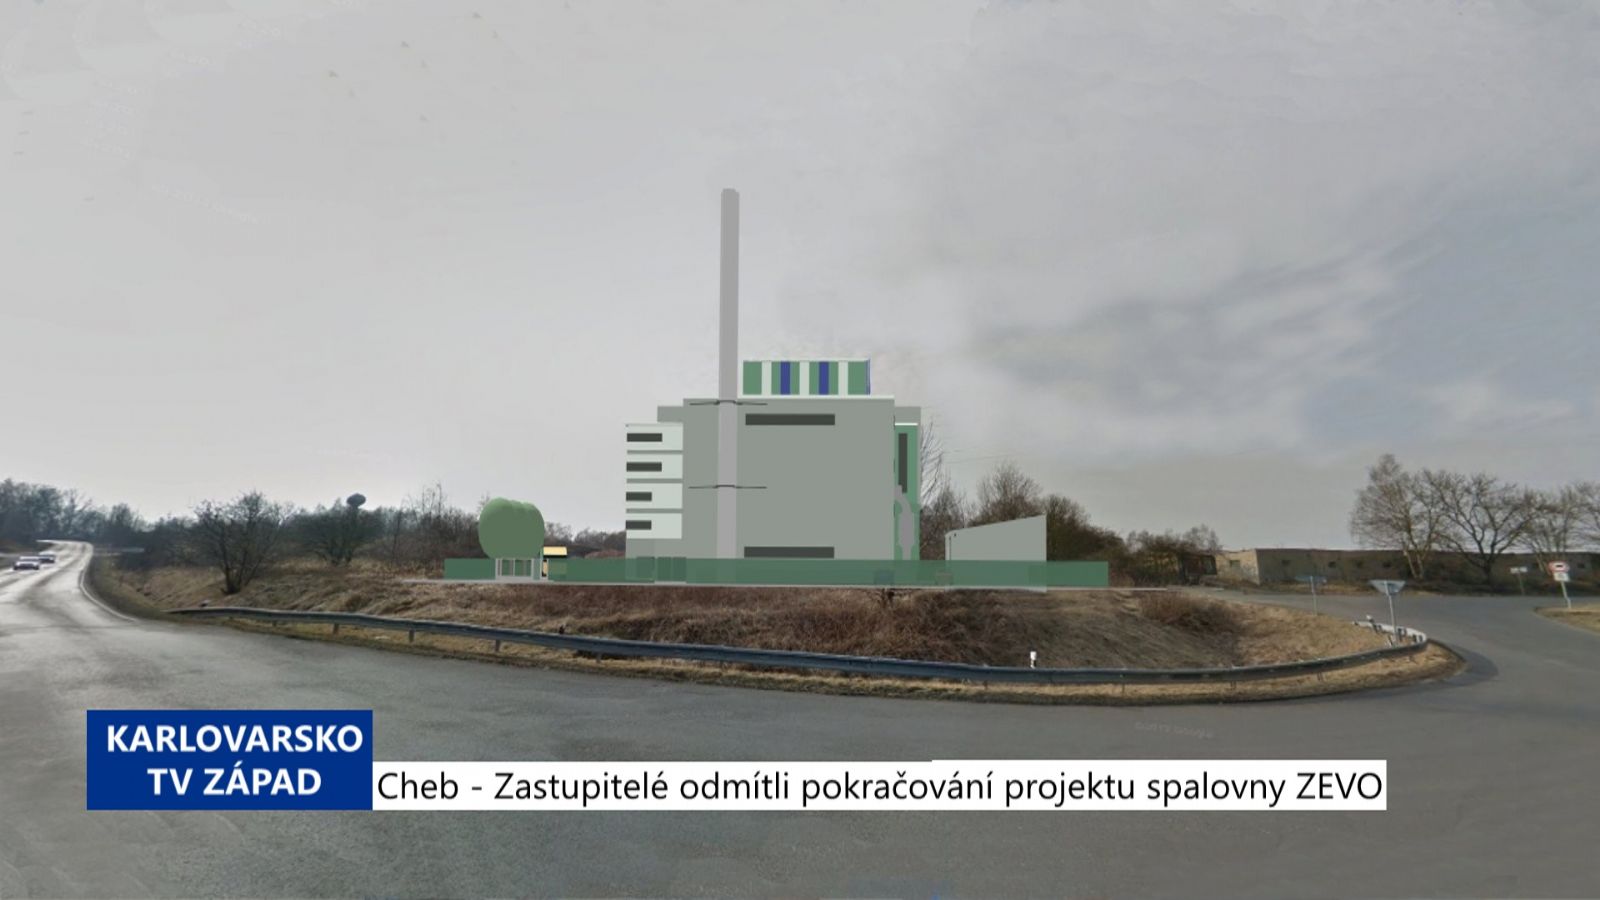 Cheb: Zastupitelé odmítli pokračování projektu spalovny ZEVO (TV Západ)